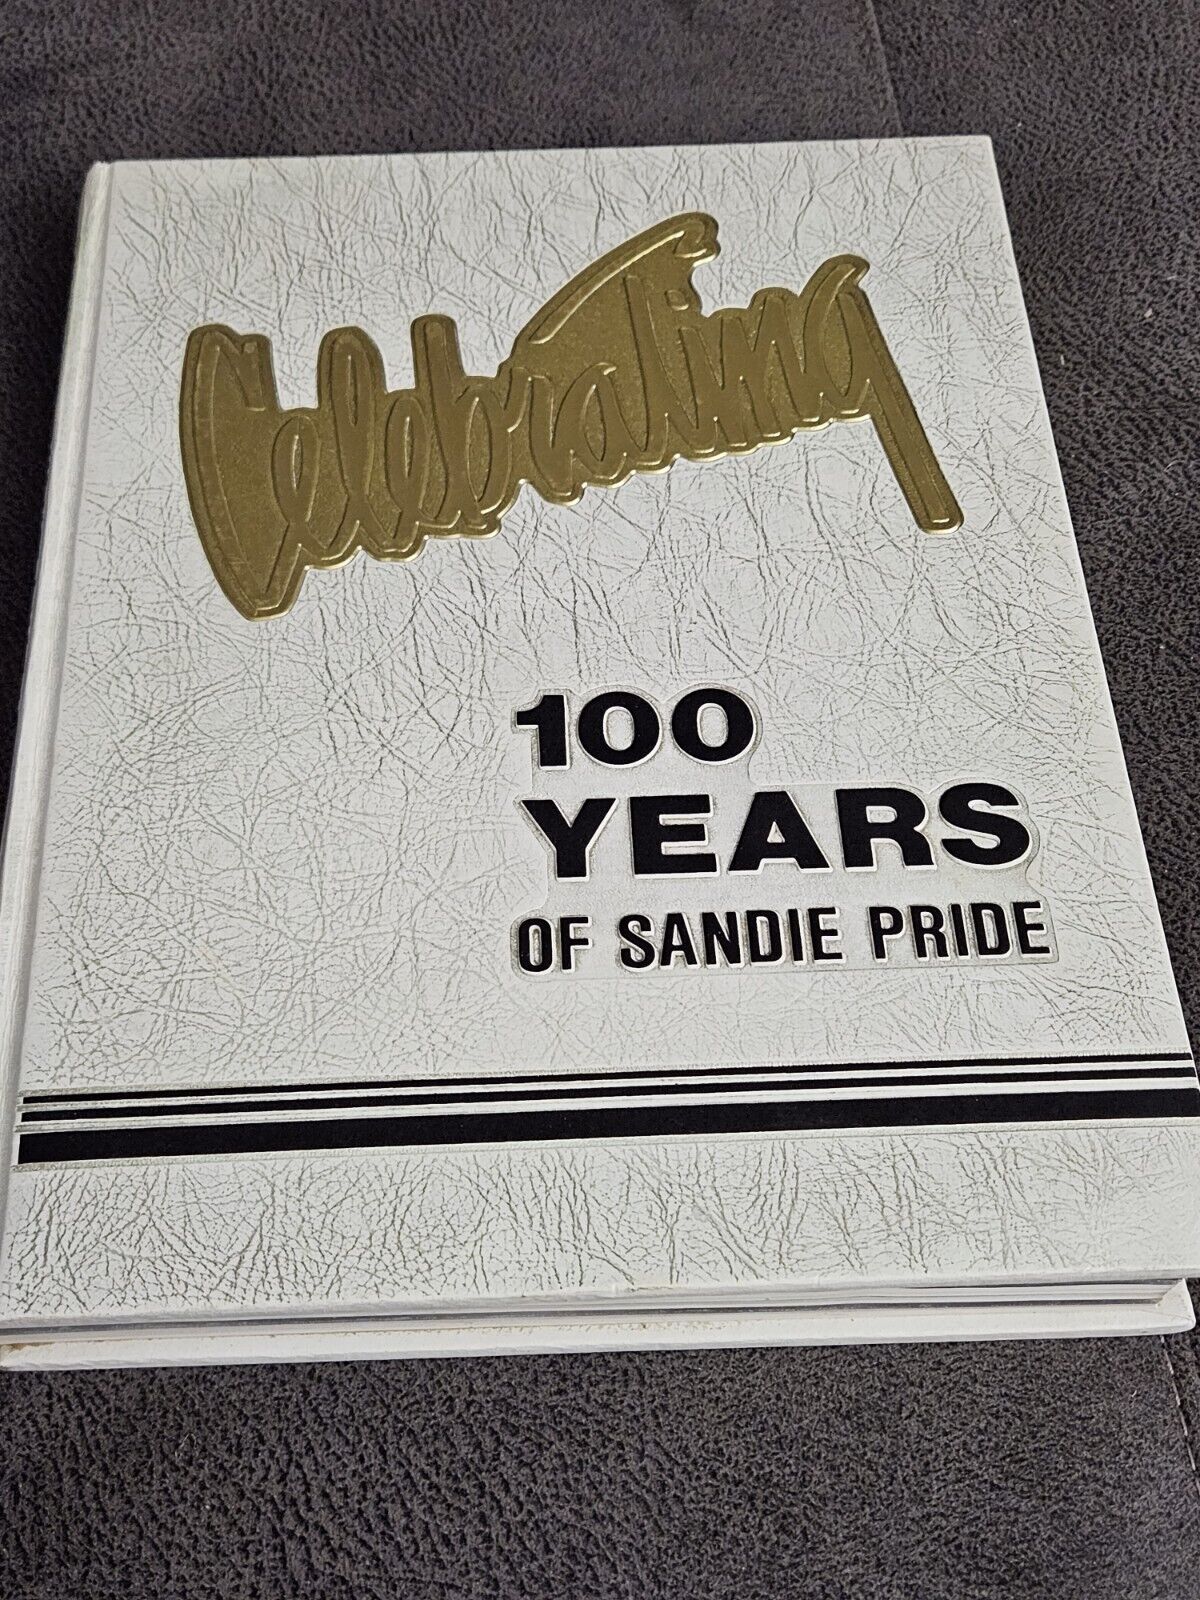 1990 La Airosa, Sandie Pride Yearbook, Amarillo High School, Amarillo,Texas (89)